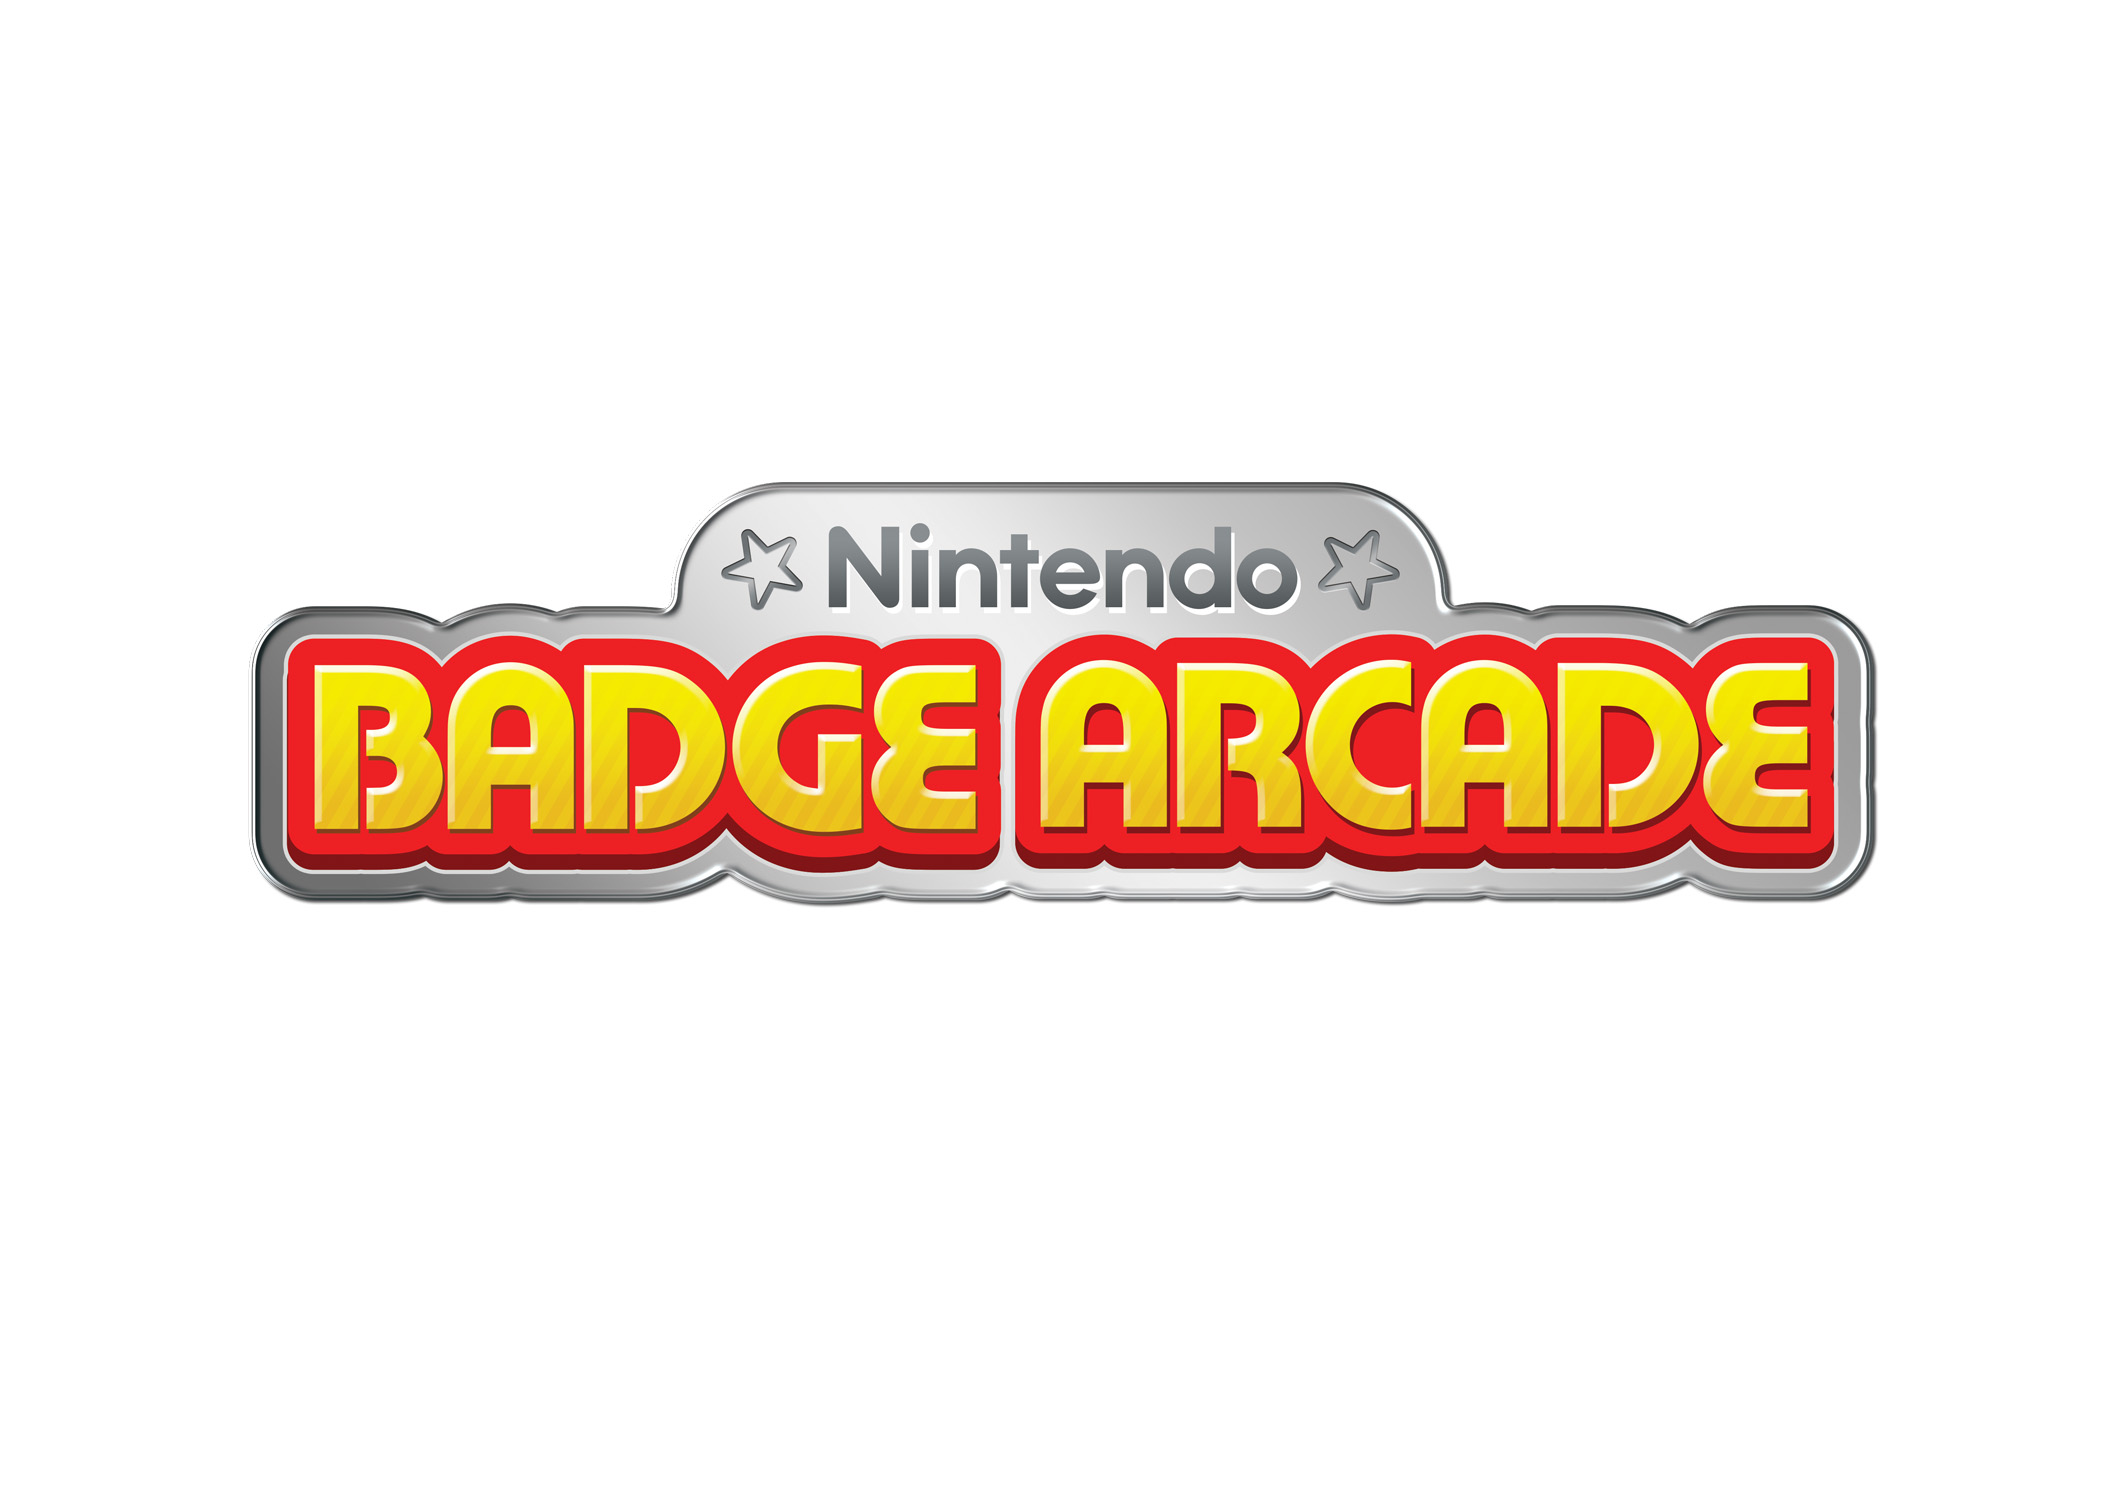 nintendo badge arcade